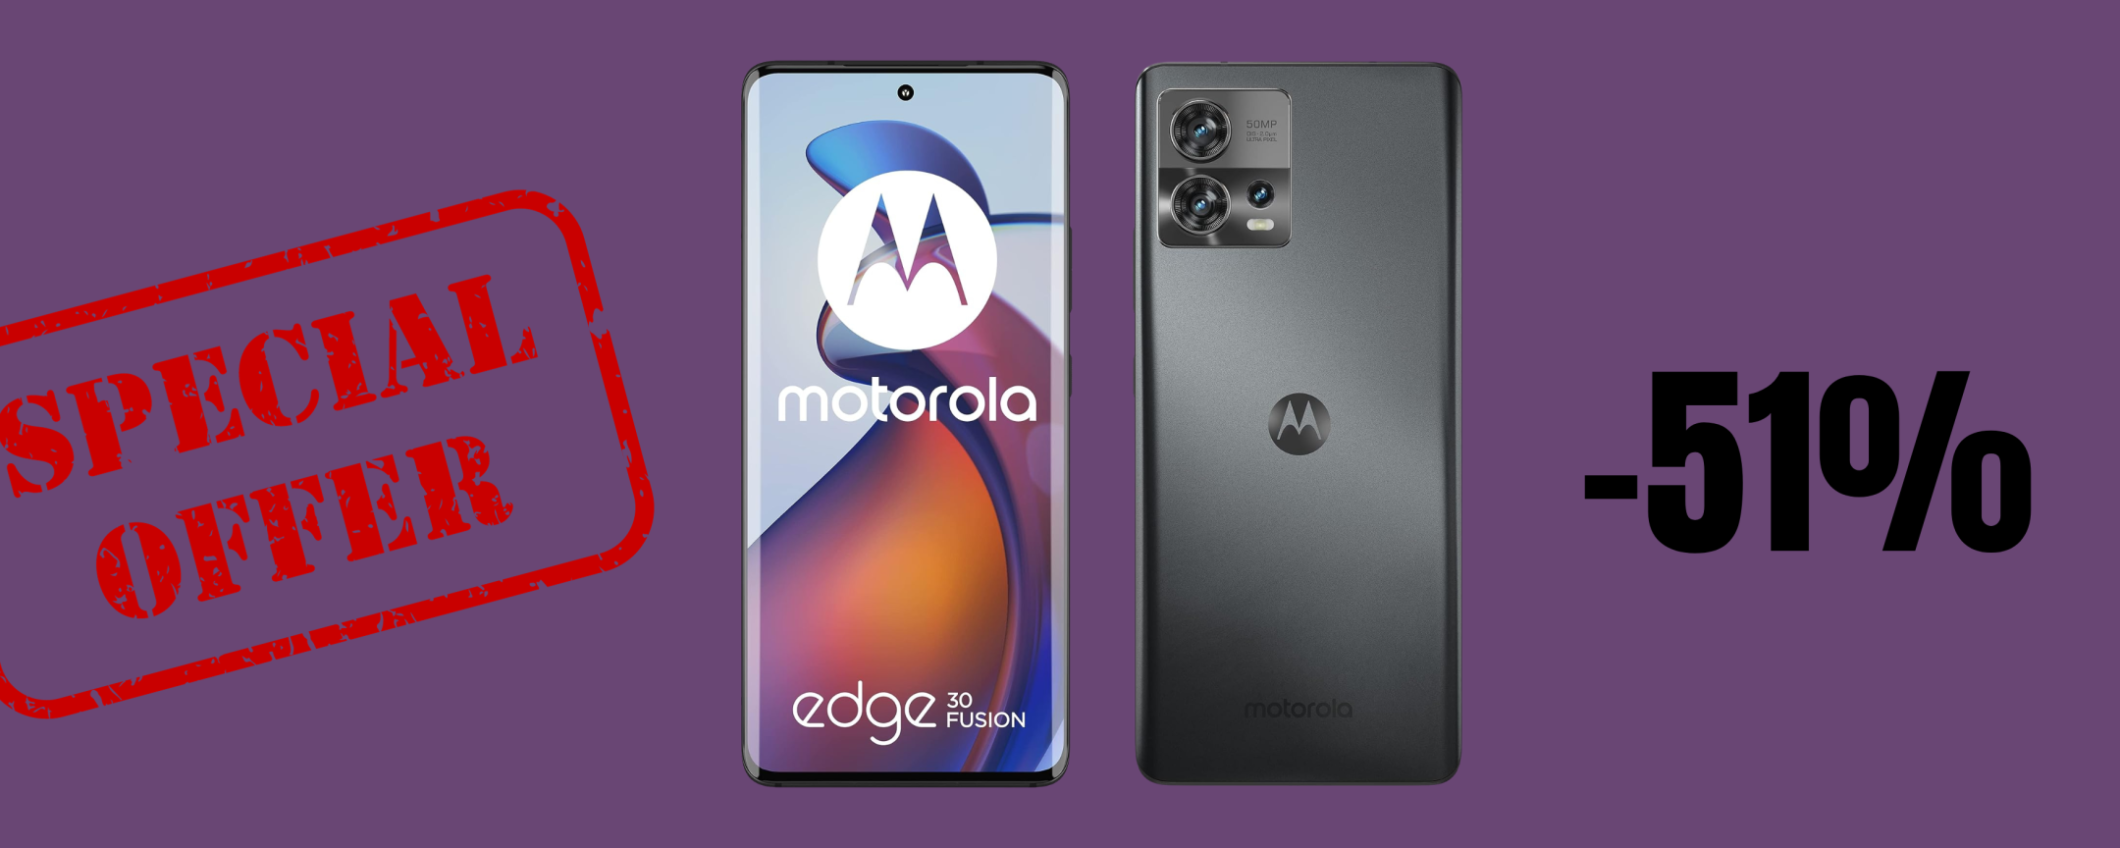 Motorola moto edge 30 Fusion in offerta FOLLE a METÀ prezzo